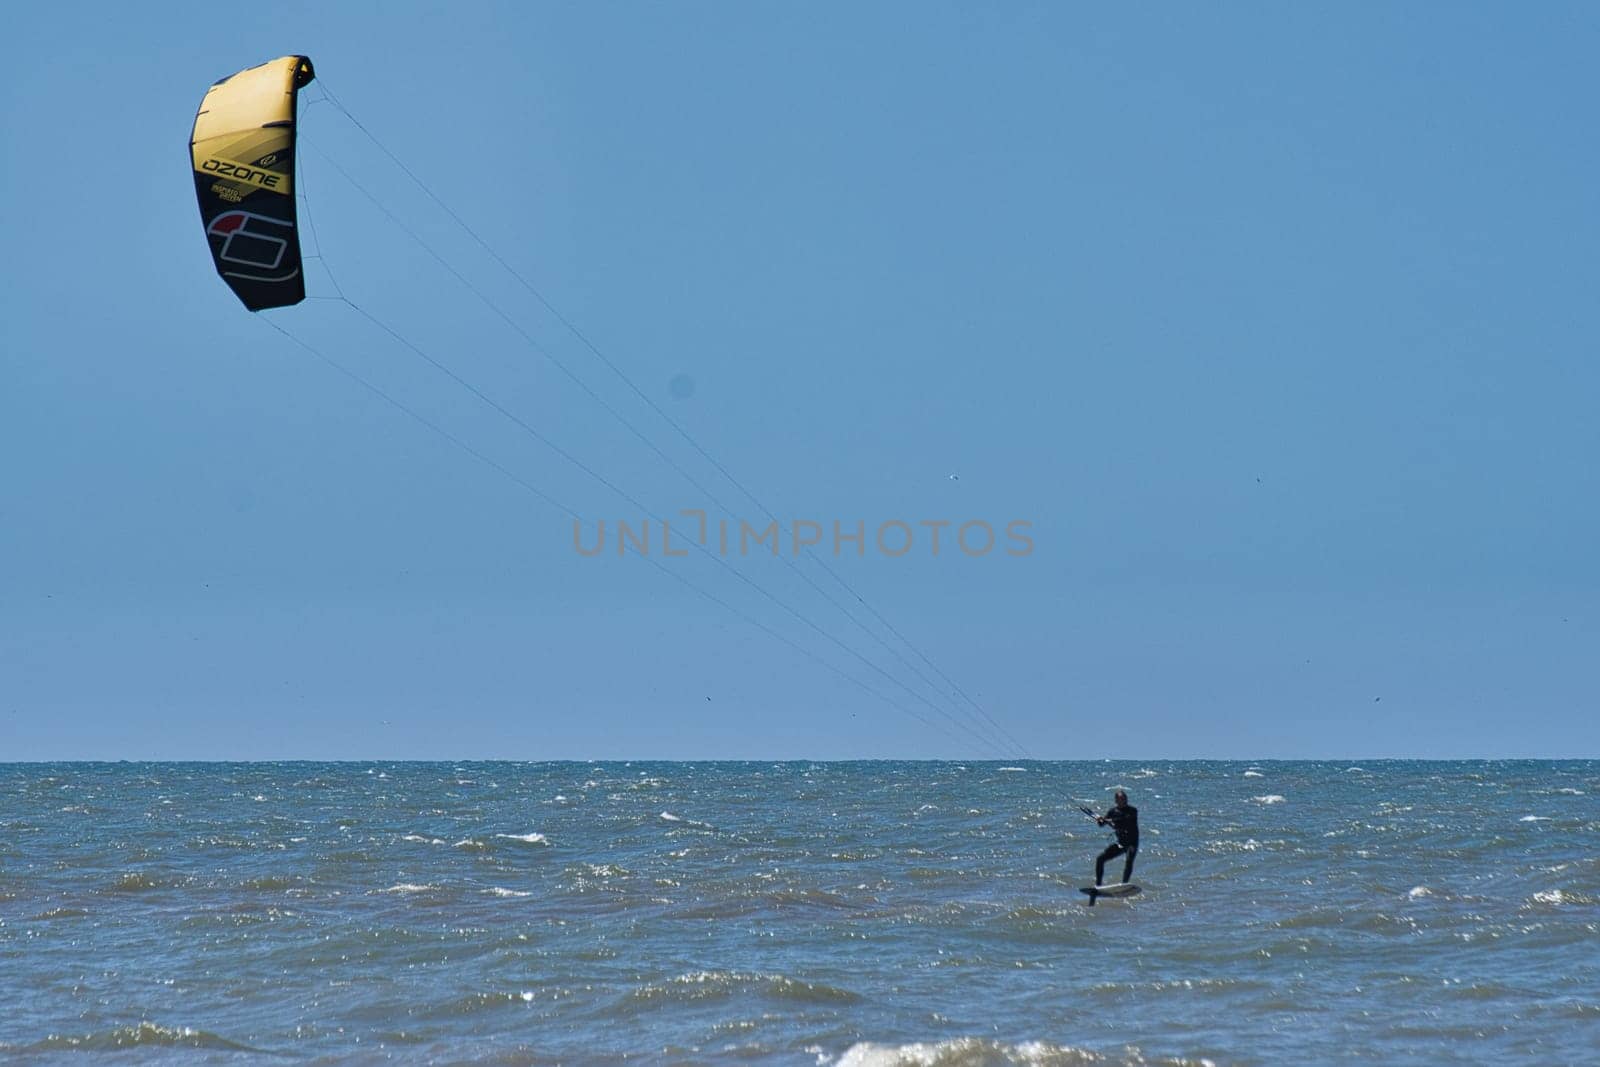 Kitesurfer in the still sea waters of beach Scheveningen in the Netherlands by rherrmannde